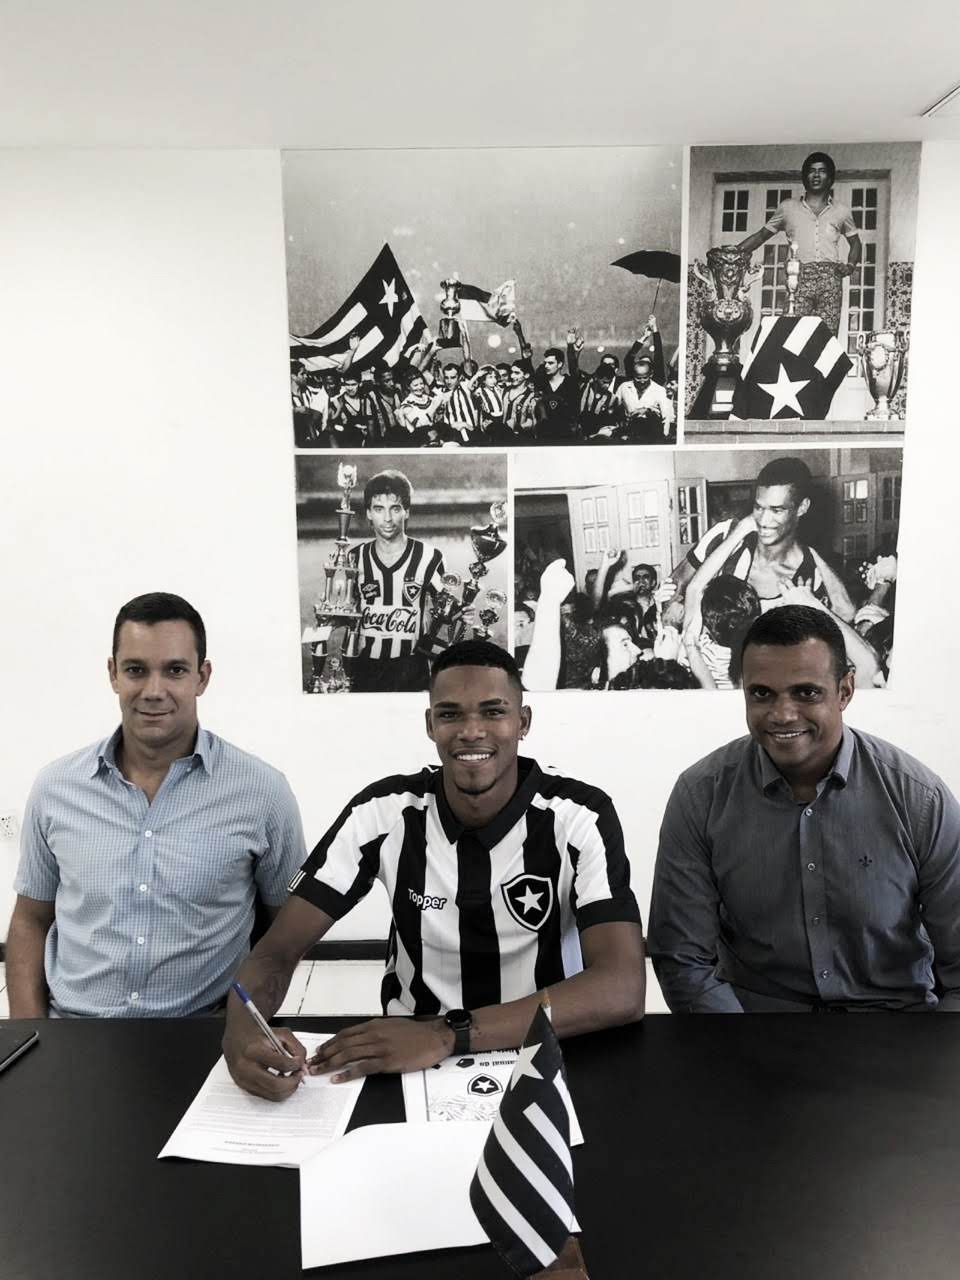 Botafogo estende vínculo com lateral-esquerdo revelado nas categorias de base  